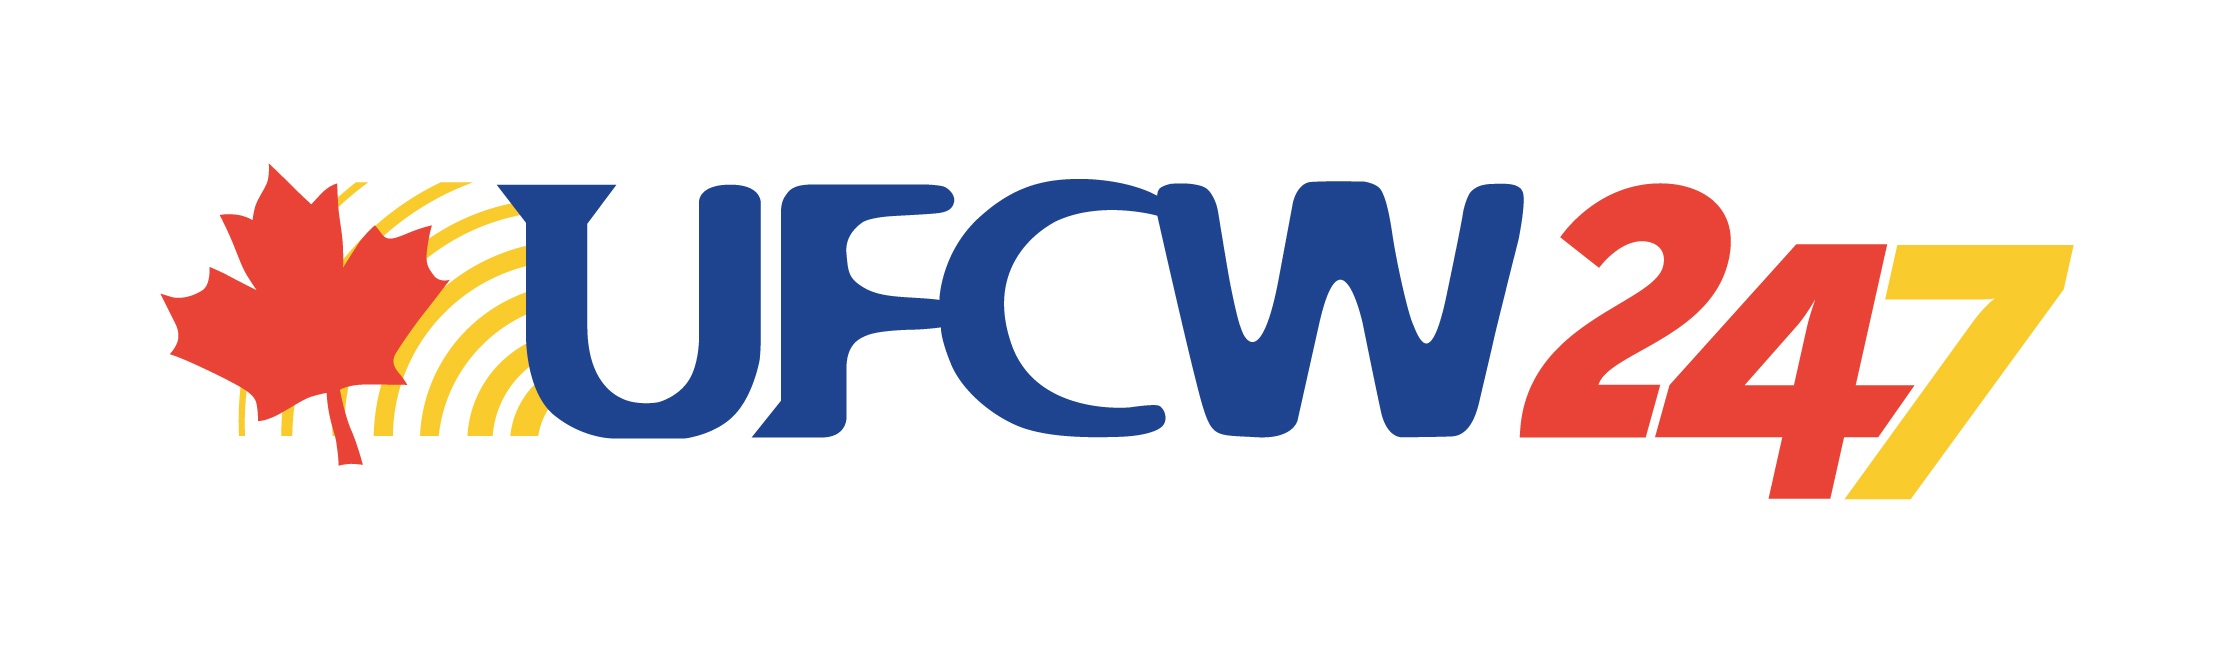 UFCW 247 logo - large teir